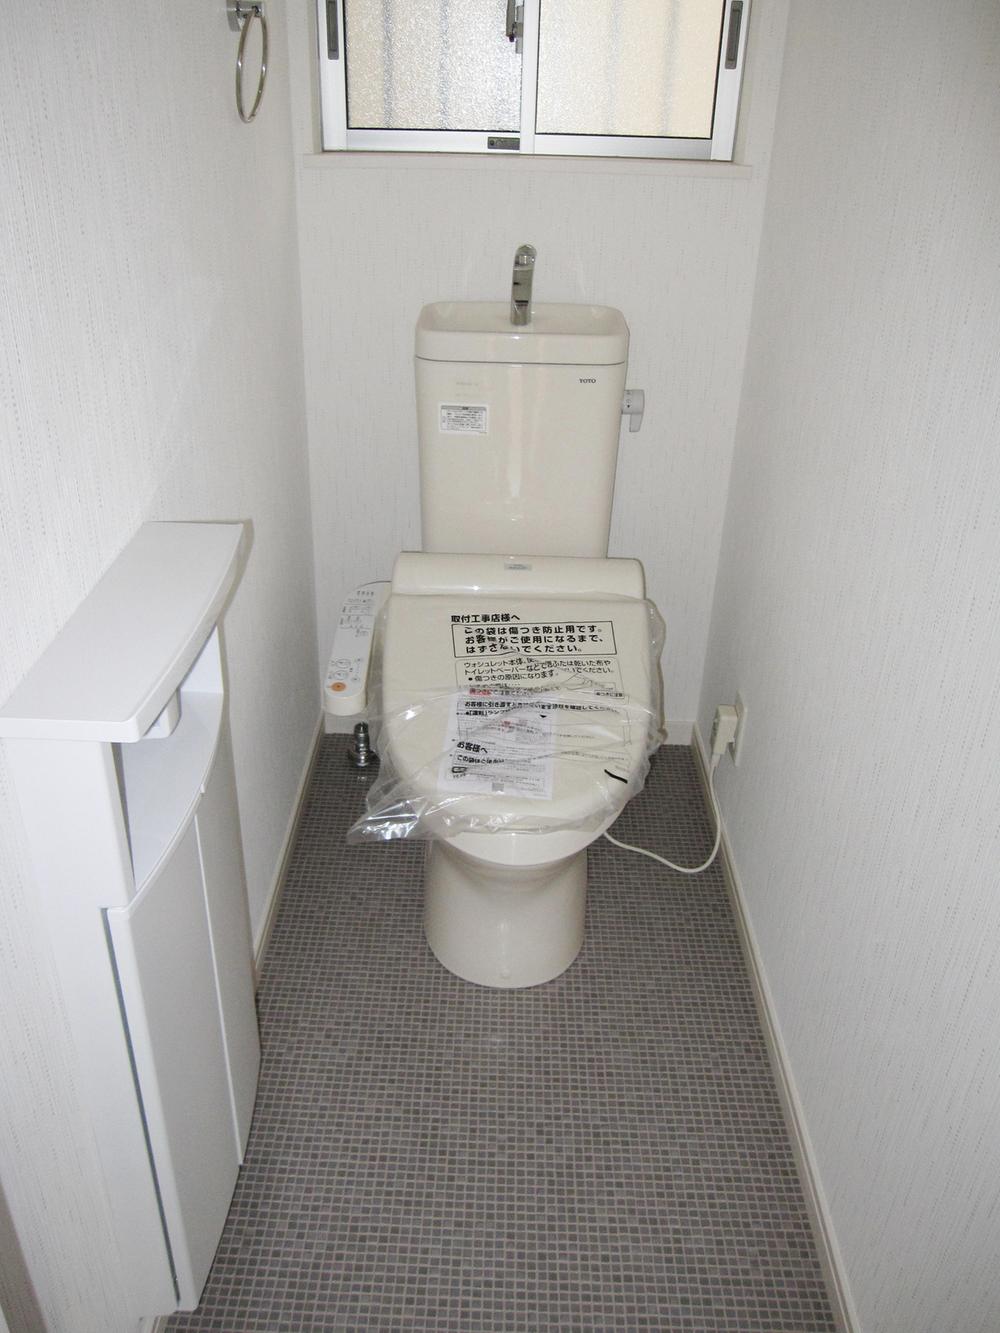 Toilet. Storage and bidet is standard installation